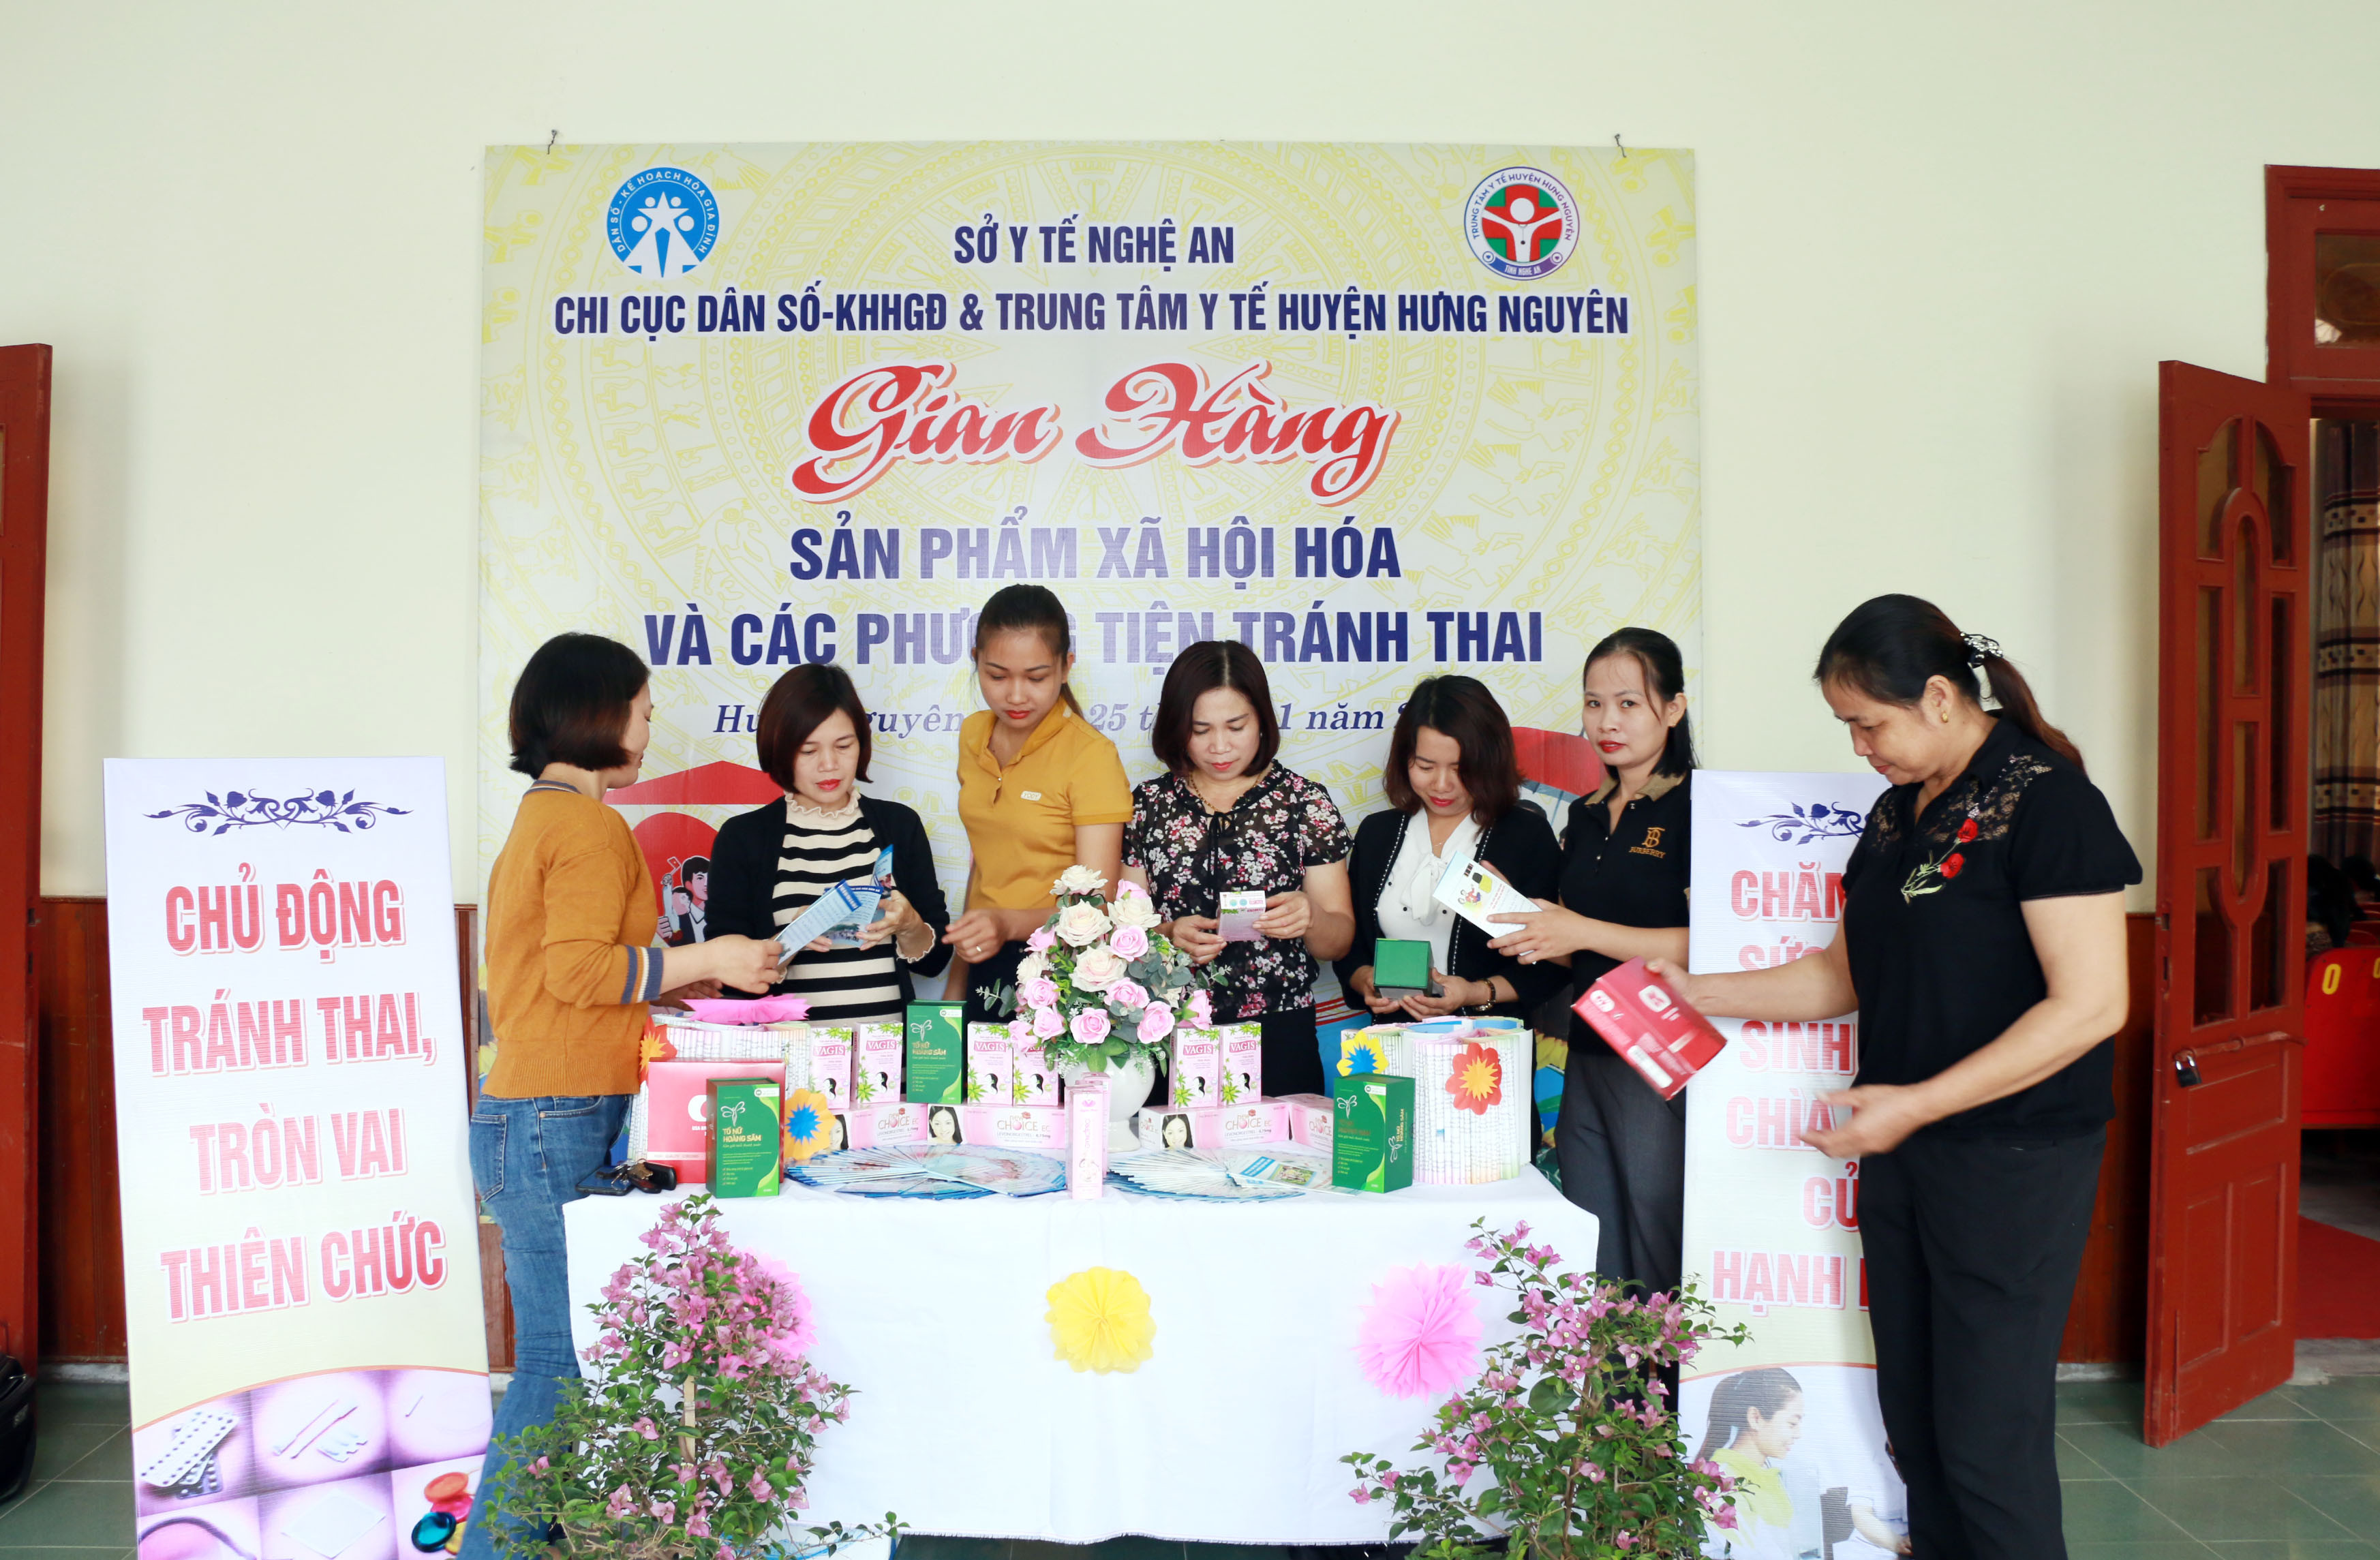 Người dân huyện Quỳnh Lưu tìm hiểu về các biện phap tránh thai.Ảnh: MH.